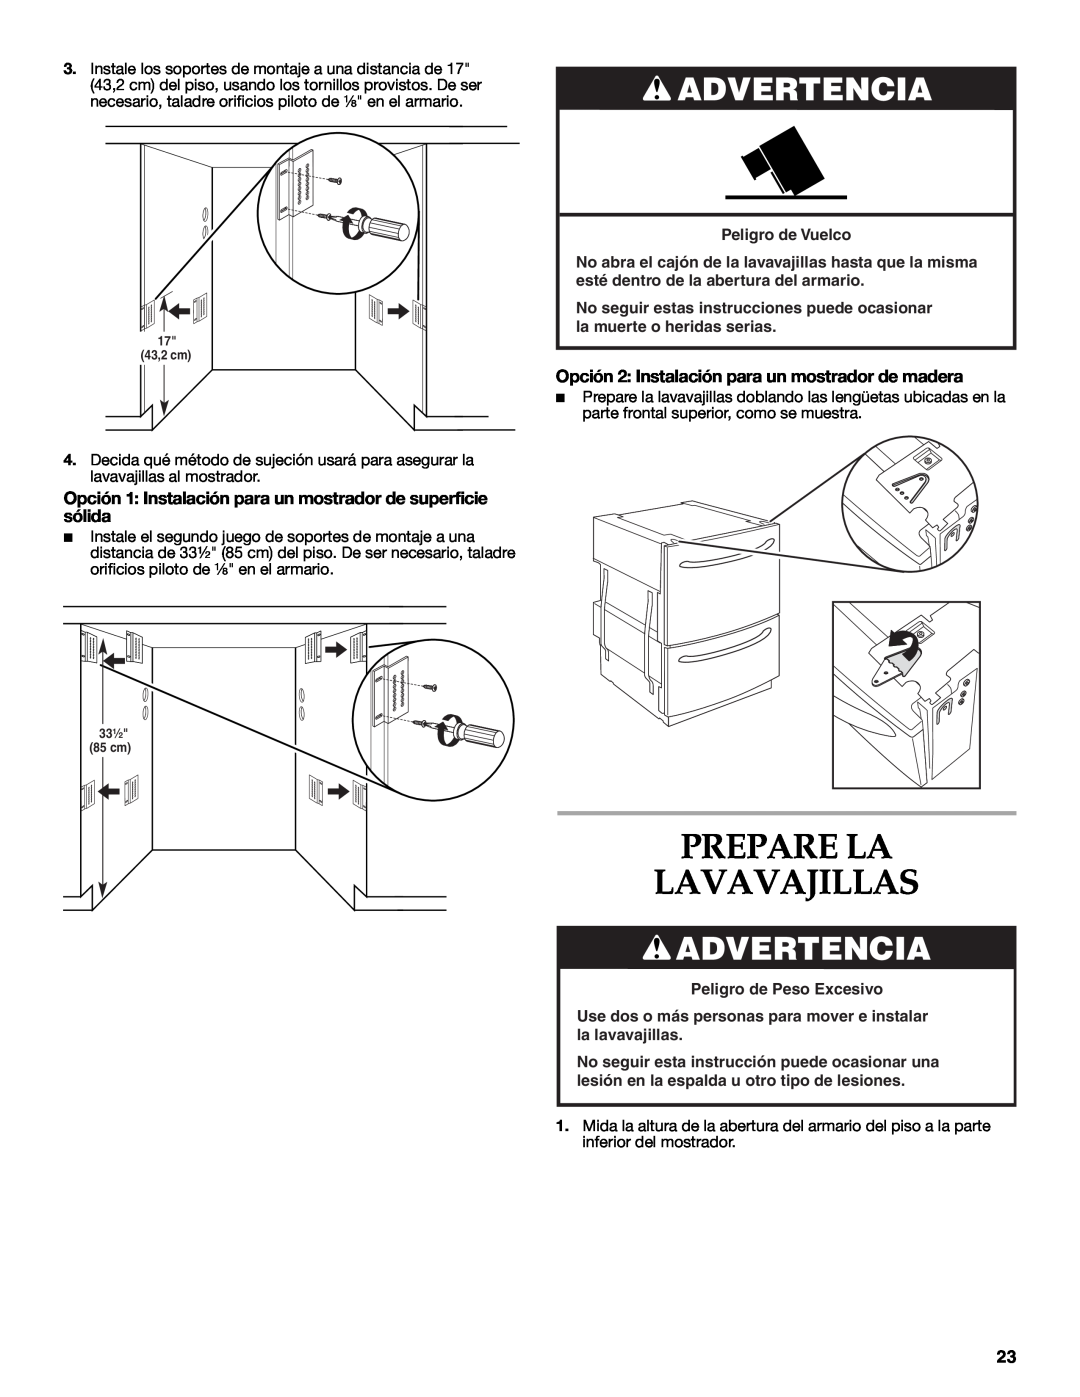 KitchenAid W10216167A Prepare La Lavavajillas, Opción 1 Instalación para un mostrador de superficie sólida, Advertencia 